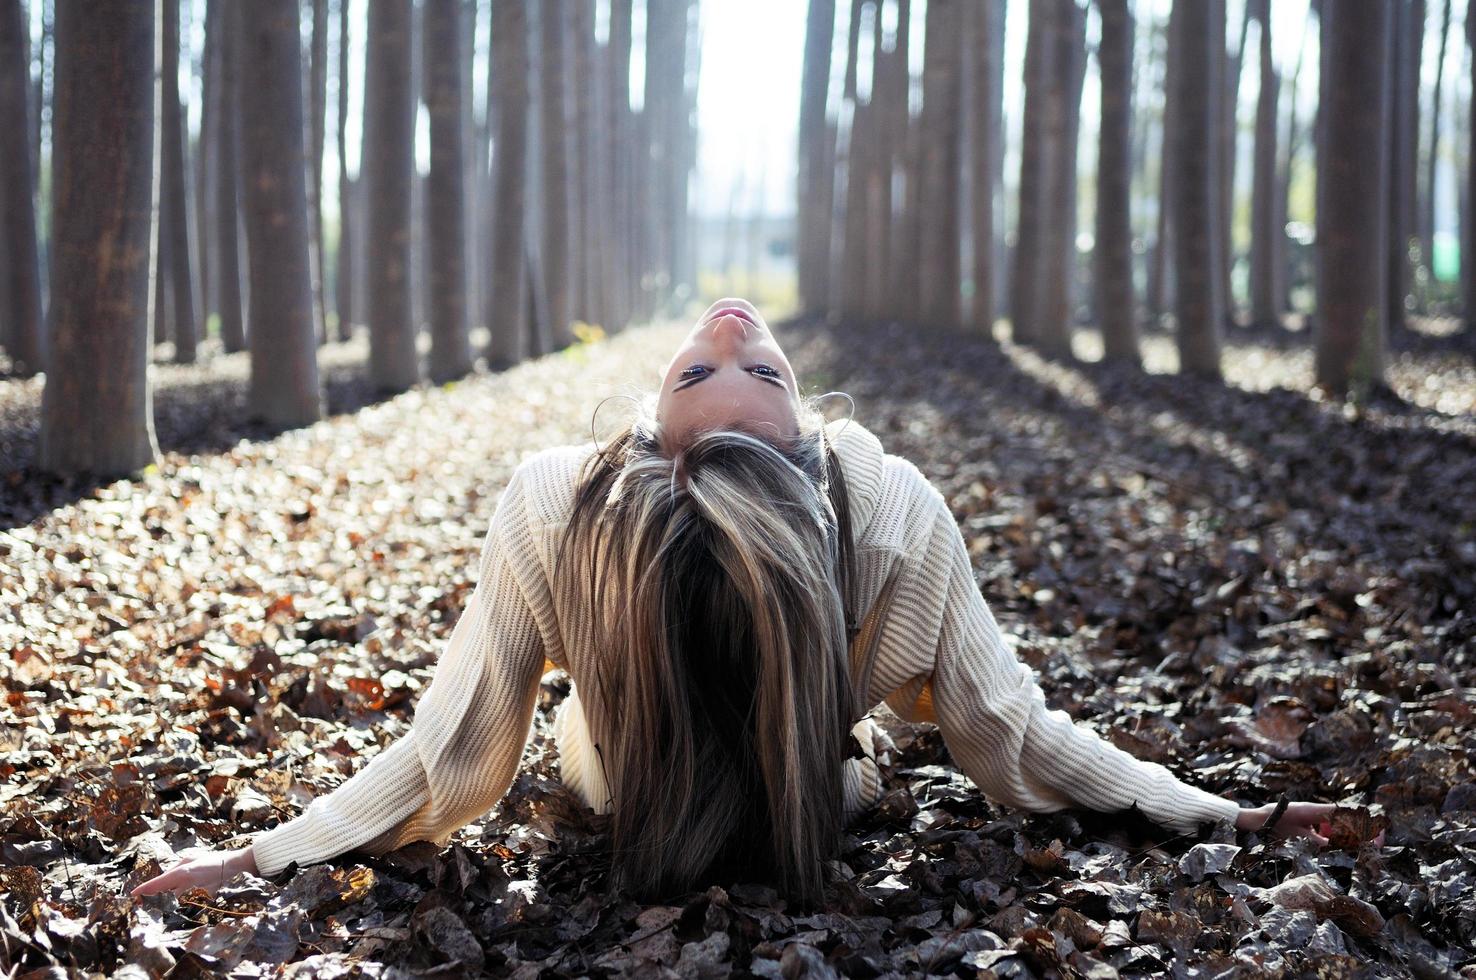 linda loira deitada em folhas em uma floresta de álamos foto